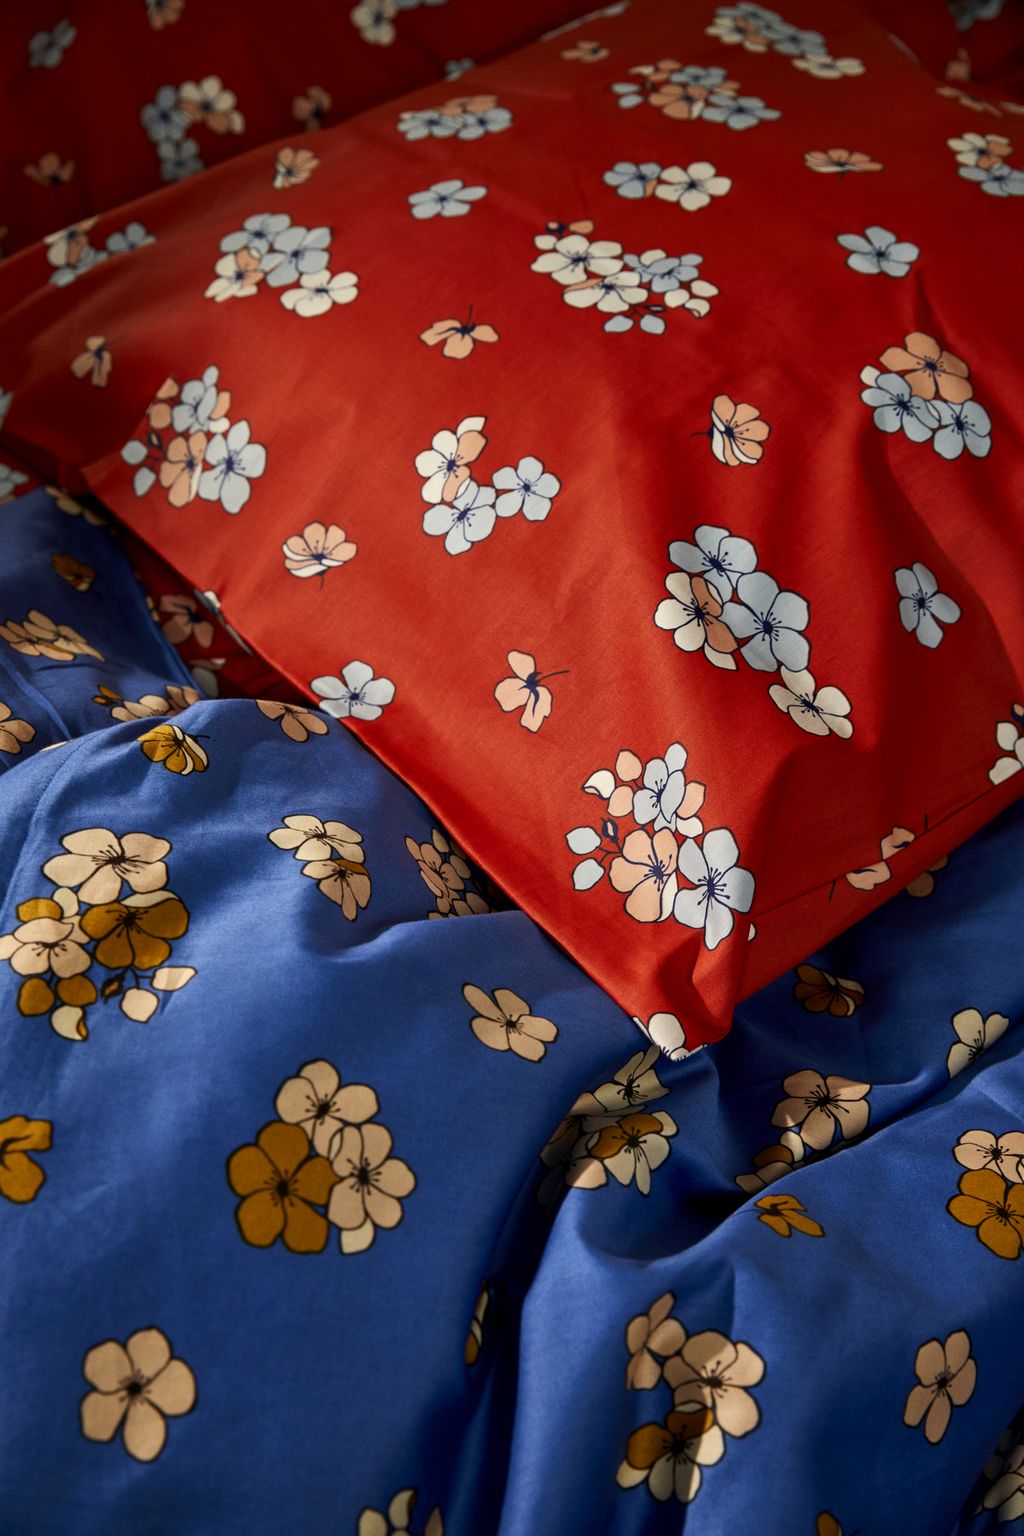 JUNA Stora behagligt sängkläder 140x220 cm, blå